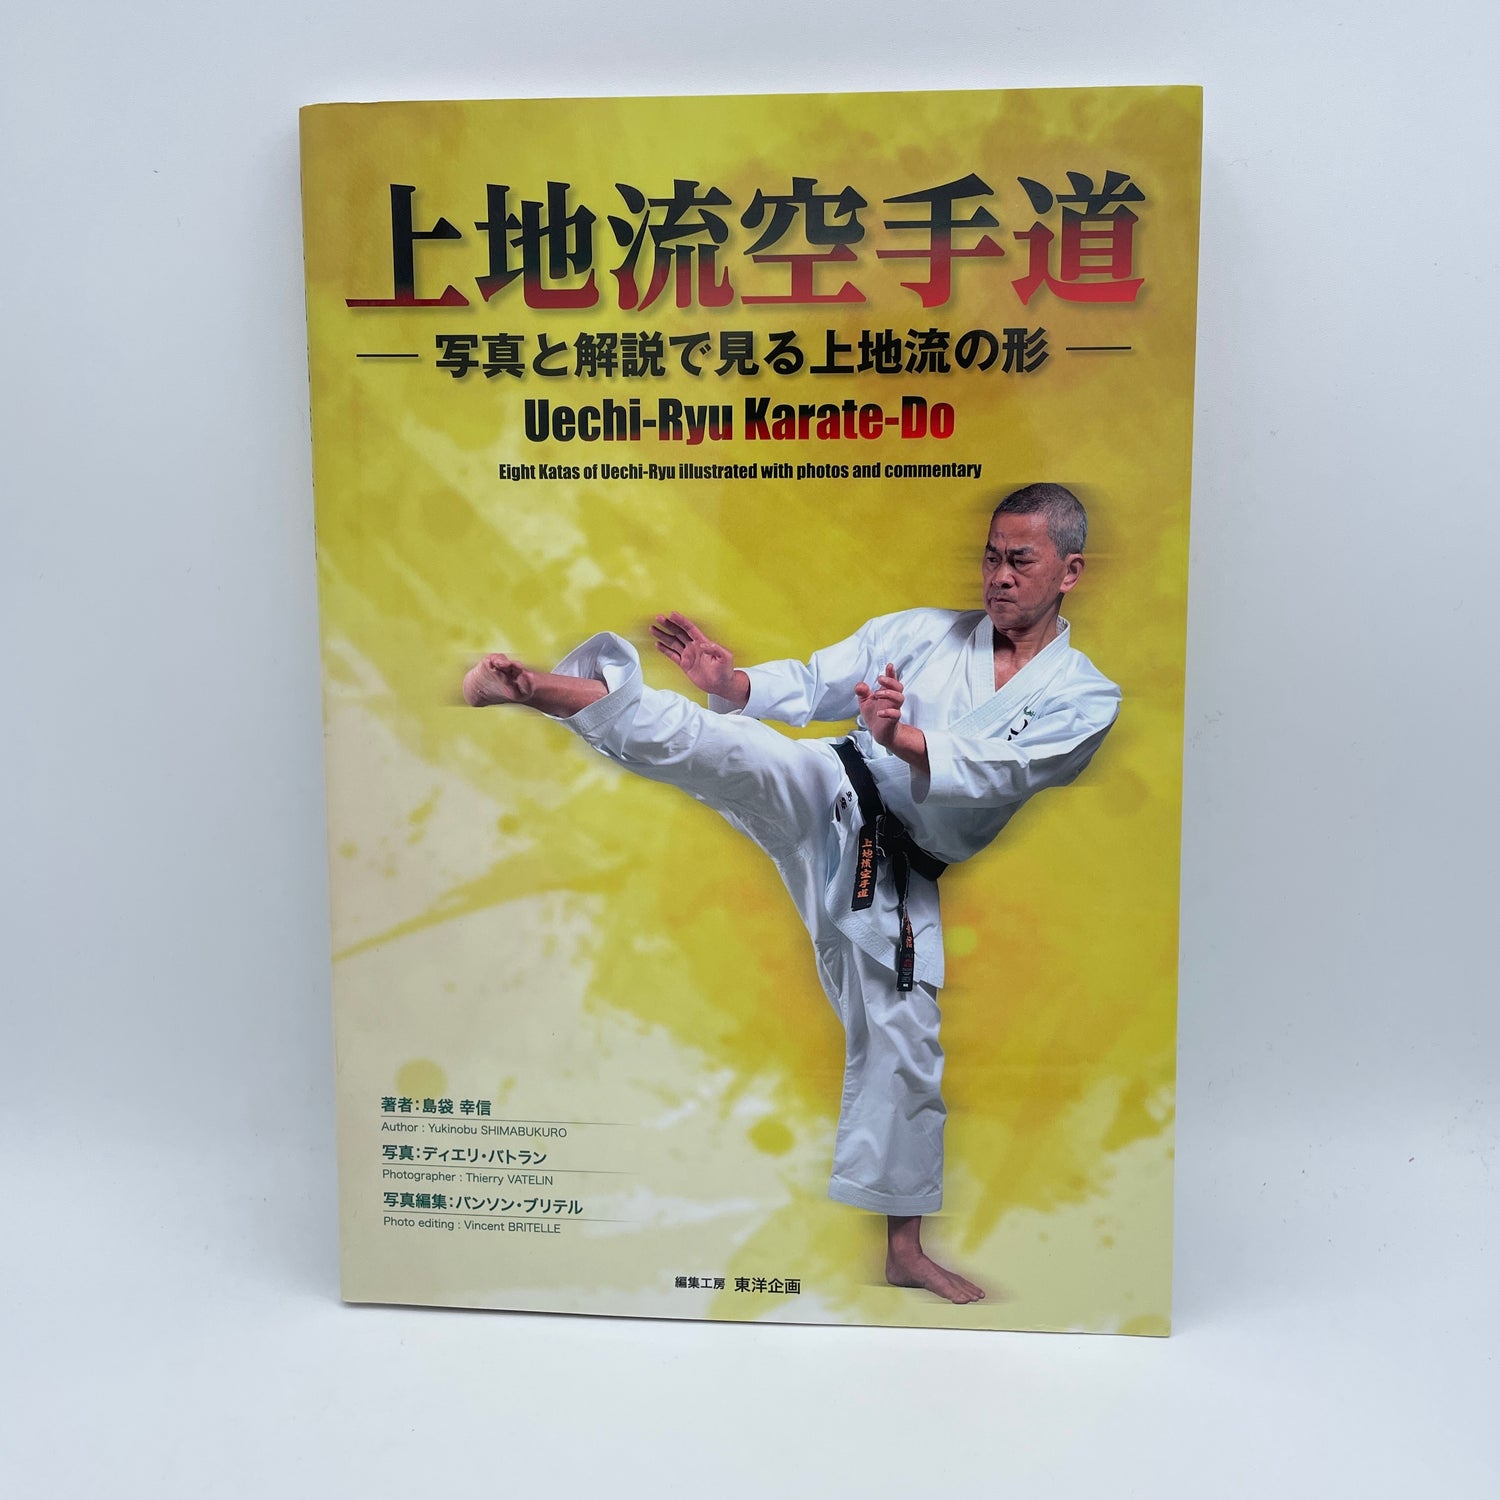 Uechi Ryu Karate Do Book by Yukinobu Shimabukuro